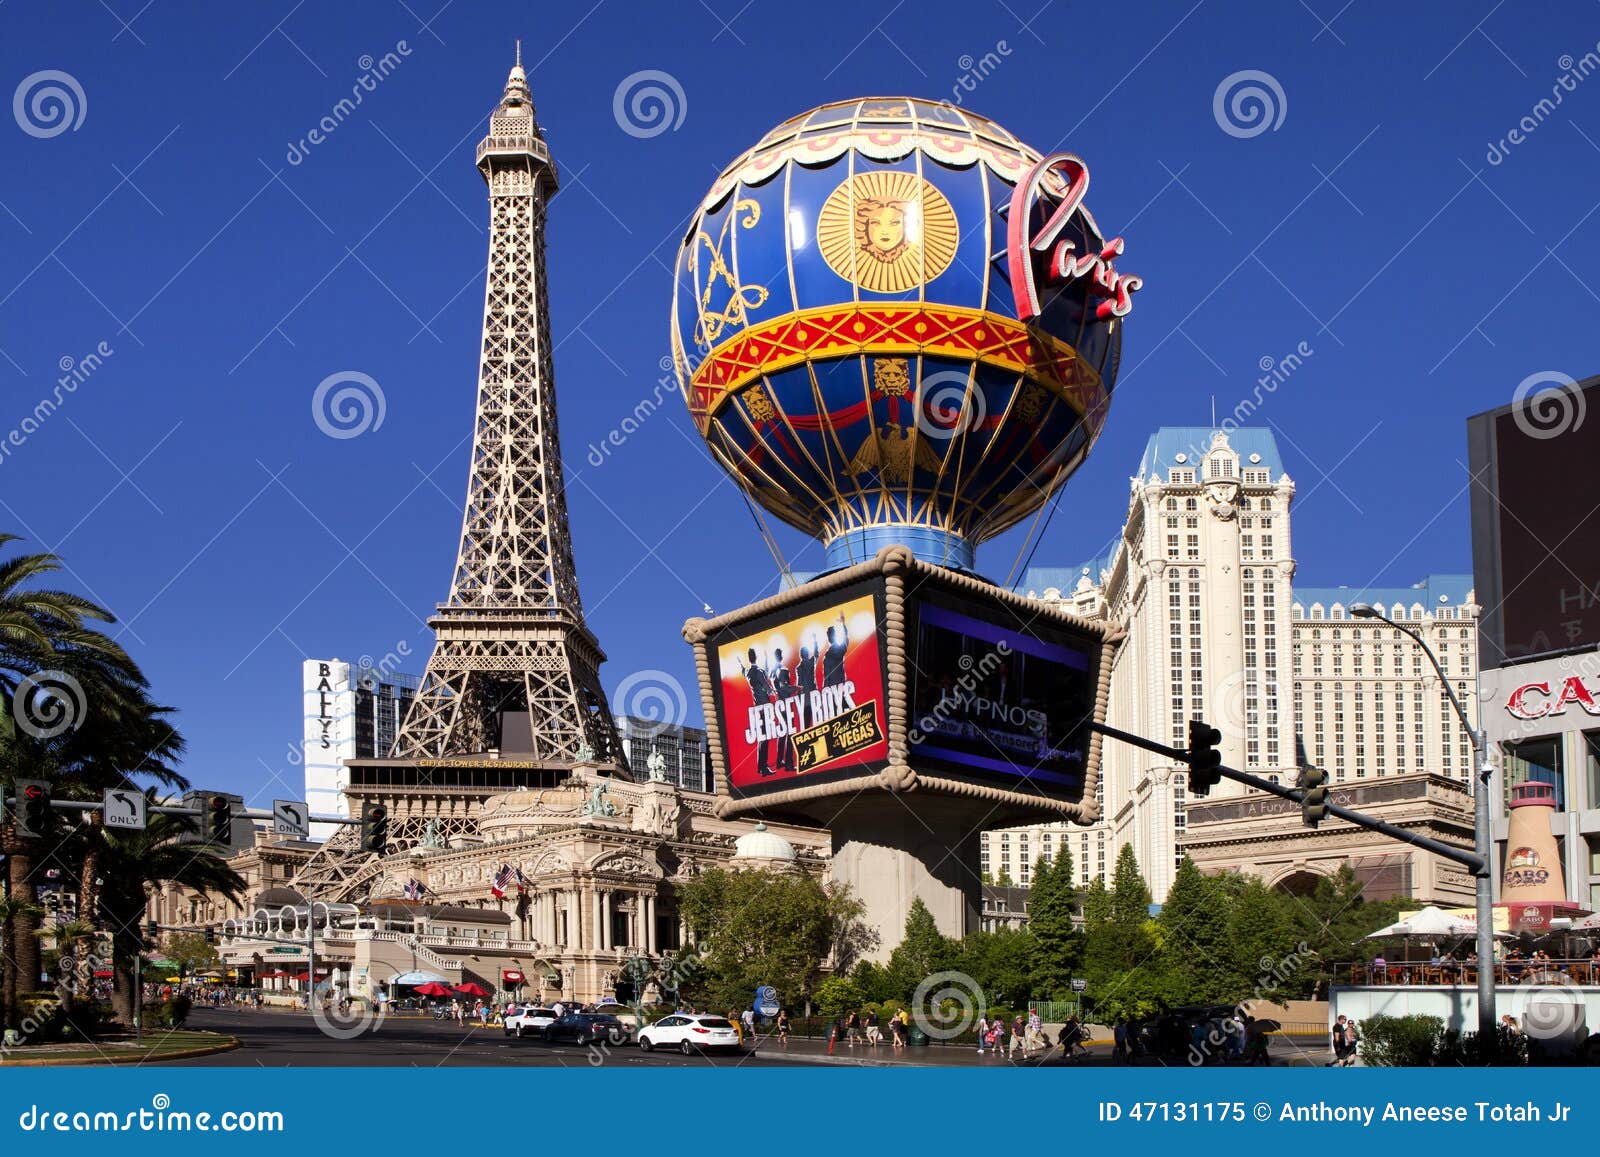 Paris Hotel and Casino in Las Vegas, Nevada Editorial Image - Image of ...